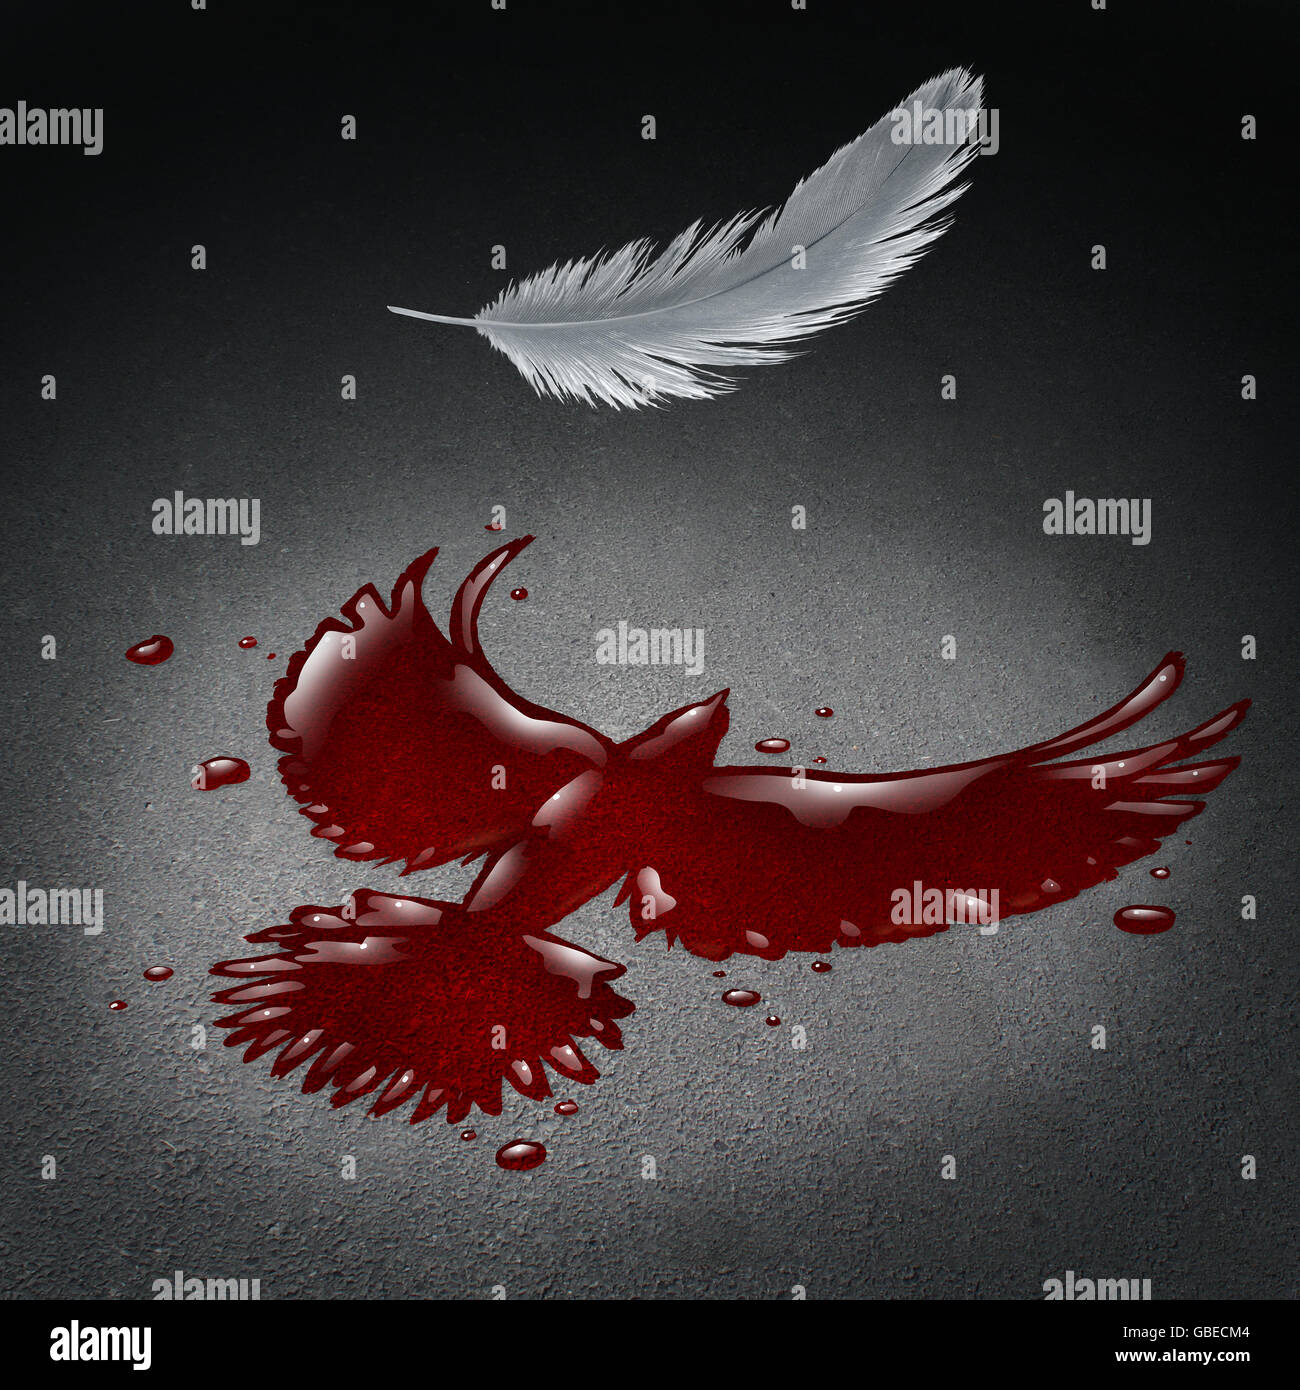 Crise de sécurité concept comme du sang sur une rue en forme d'une colombe de la paix avec une plume blanche tomber comme une métaphore de la violence et de la guerre mondiale et la tragédie de la société avec les victimes de catastrophes dans un style 3D illustration. Banque D'Images